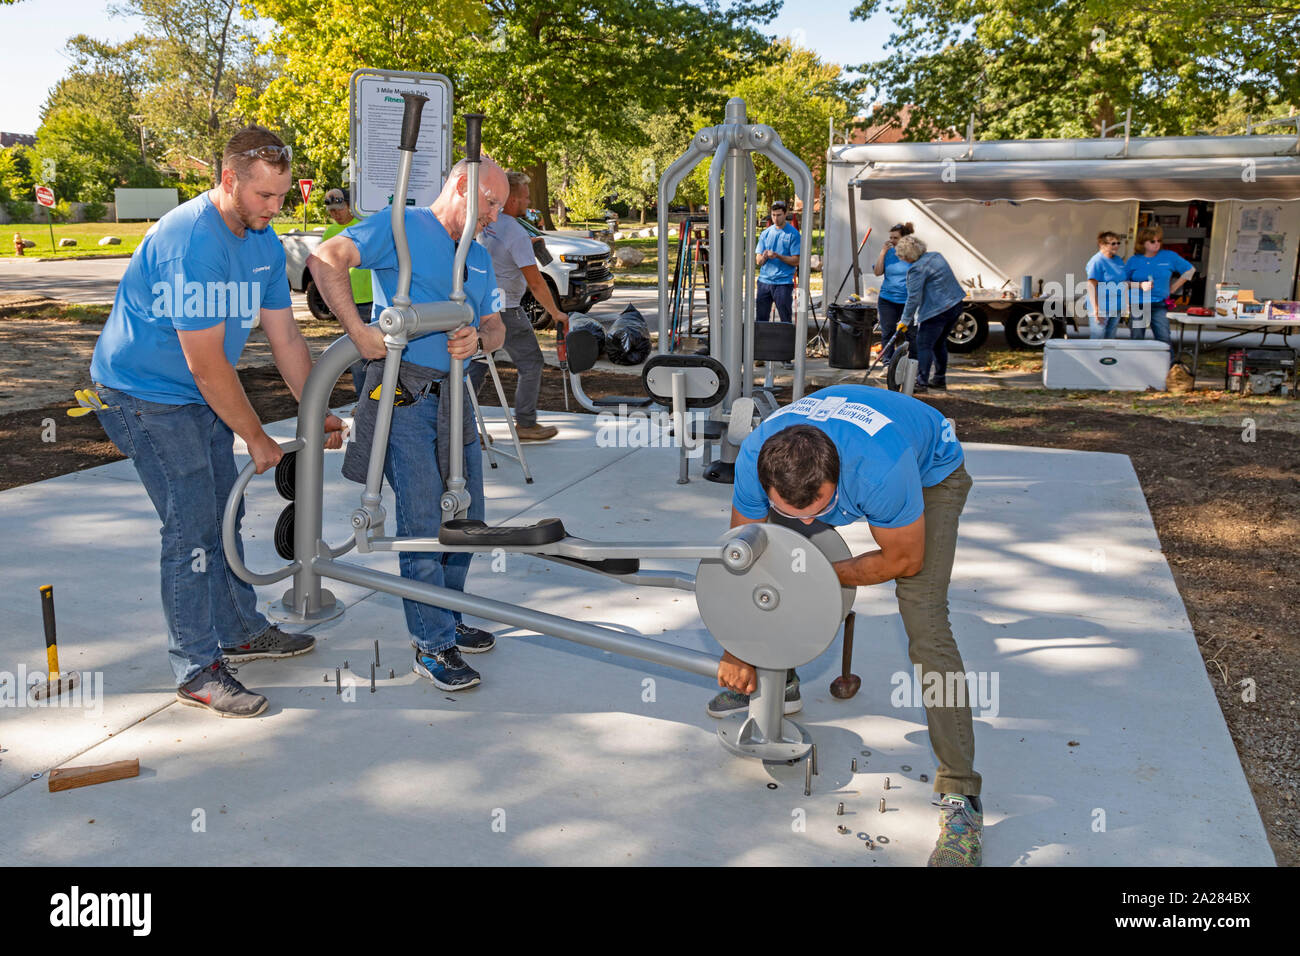 Detroit, Michigan - Volontari da Cooper standard di installare attrezzature ginniche in una nuova comunità del parco nel quartiere di Morningside. Foto Stock